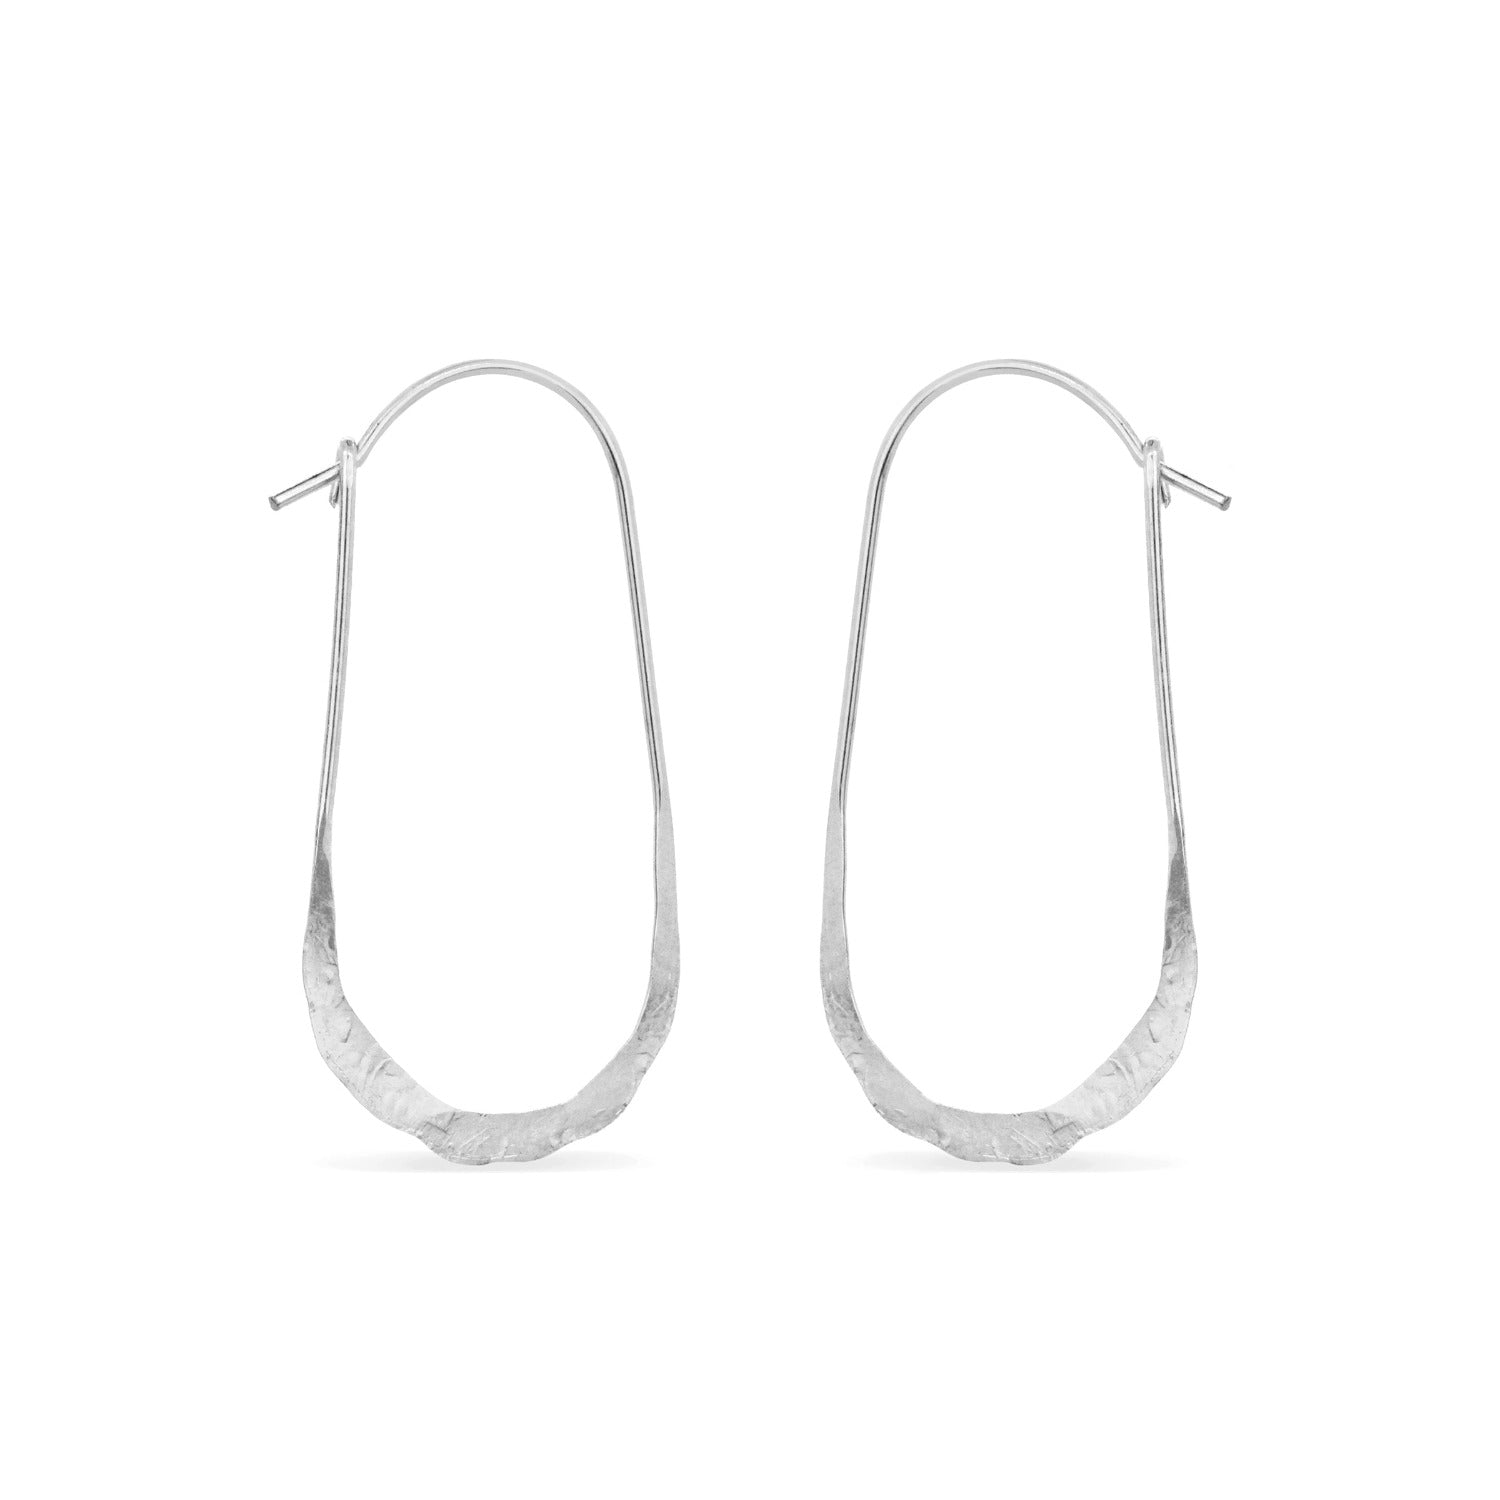 Oval hammered hoop earrings in sterling silver